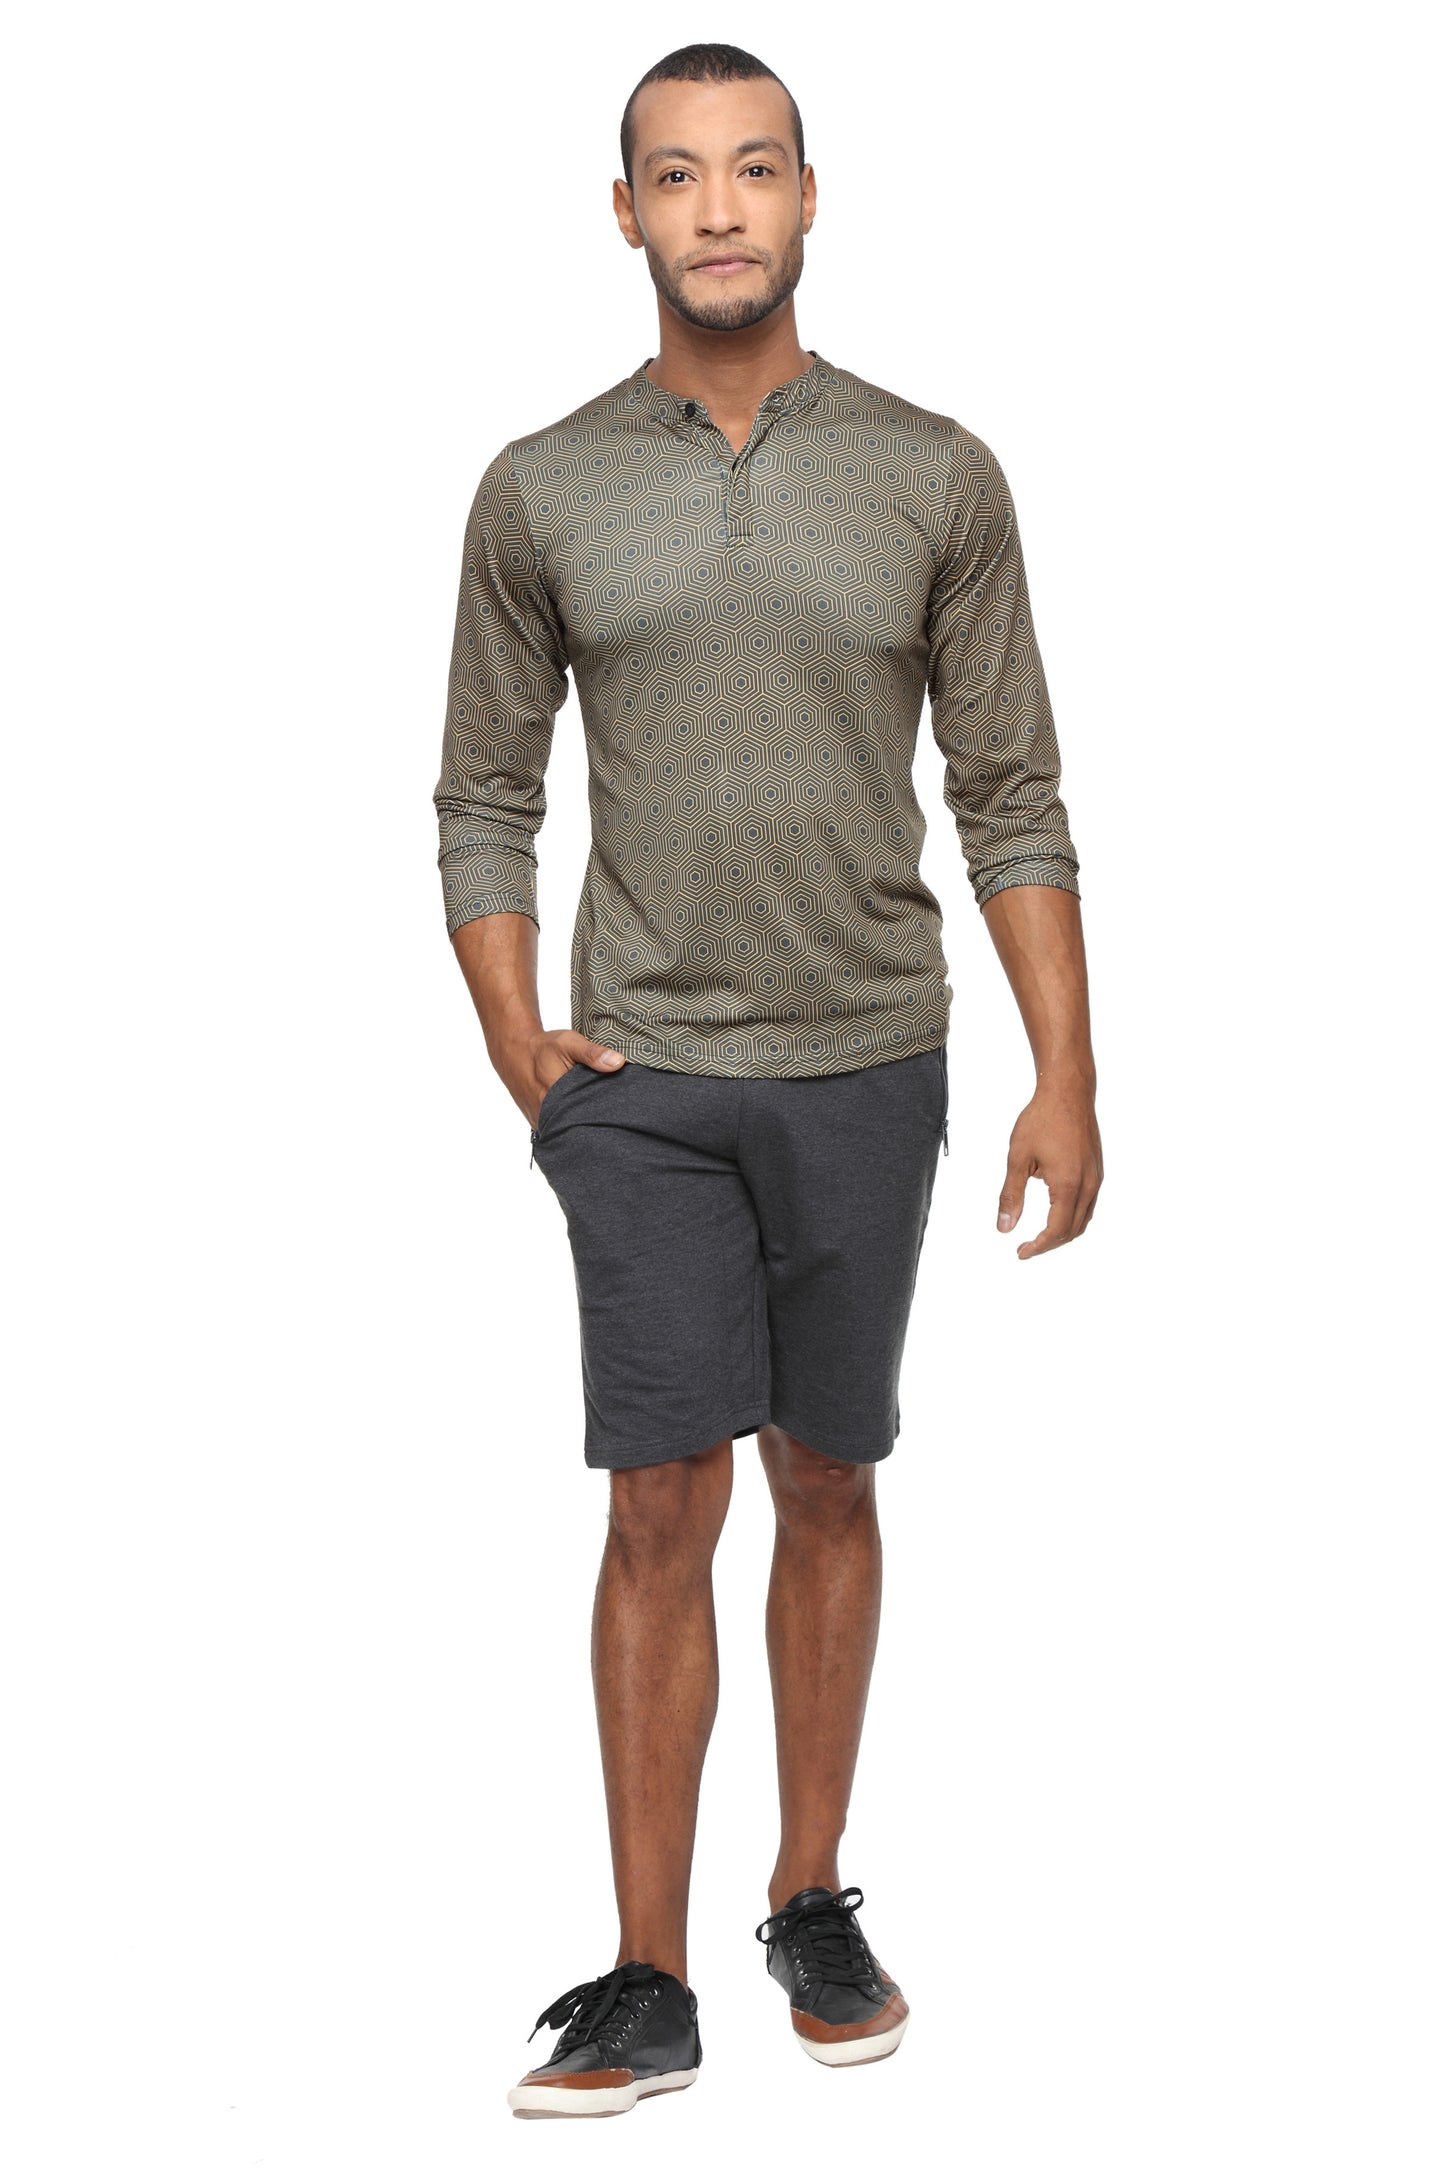 Cotton training Shorts- Grey - Zebo Active Wear